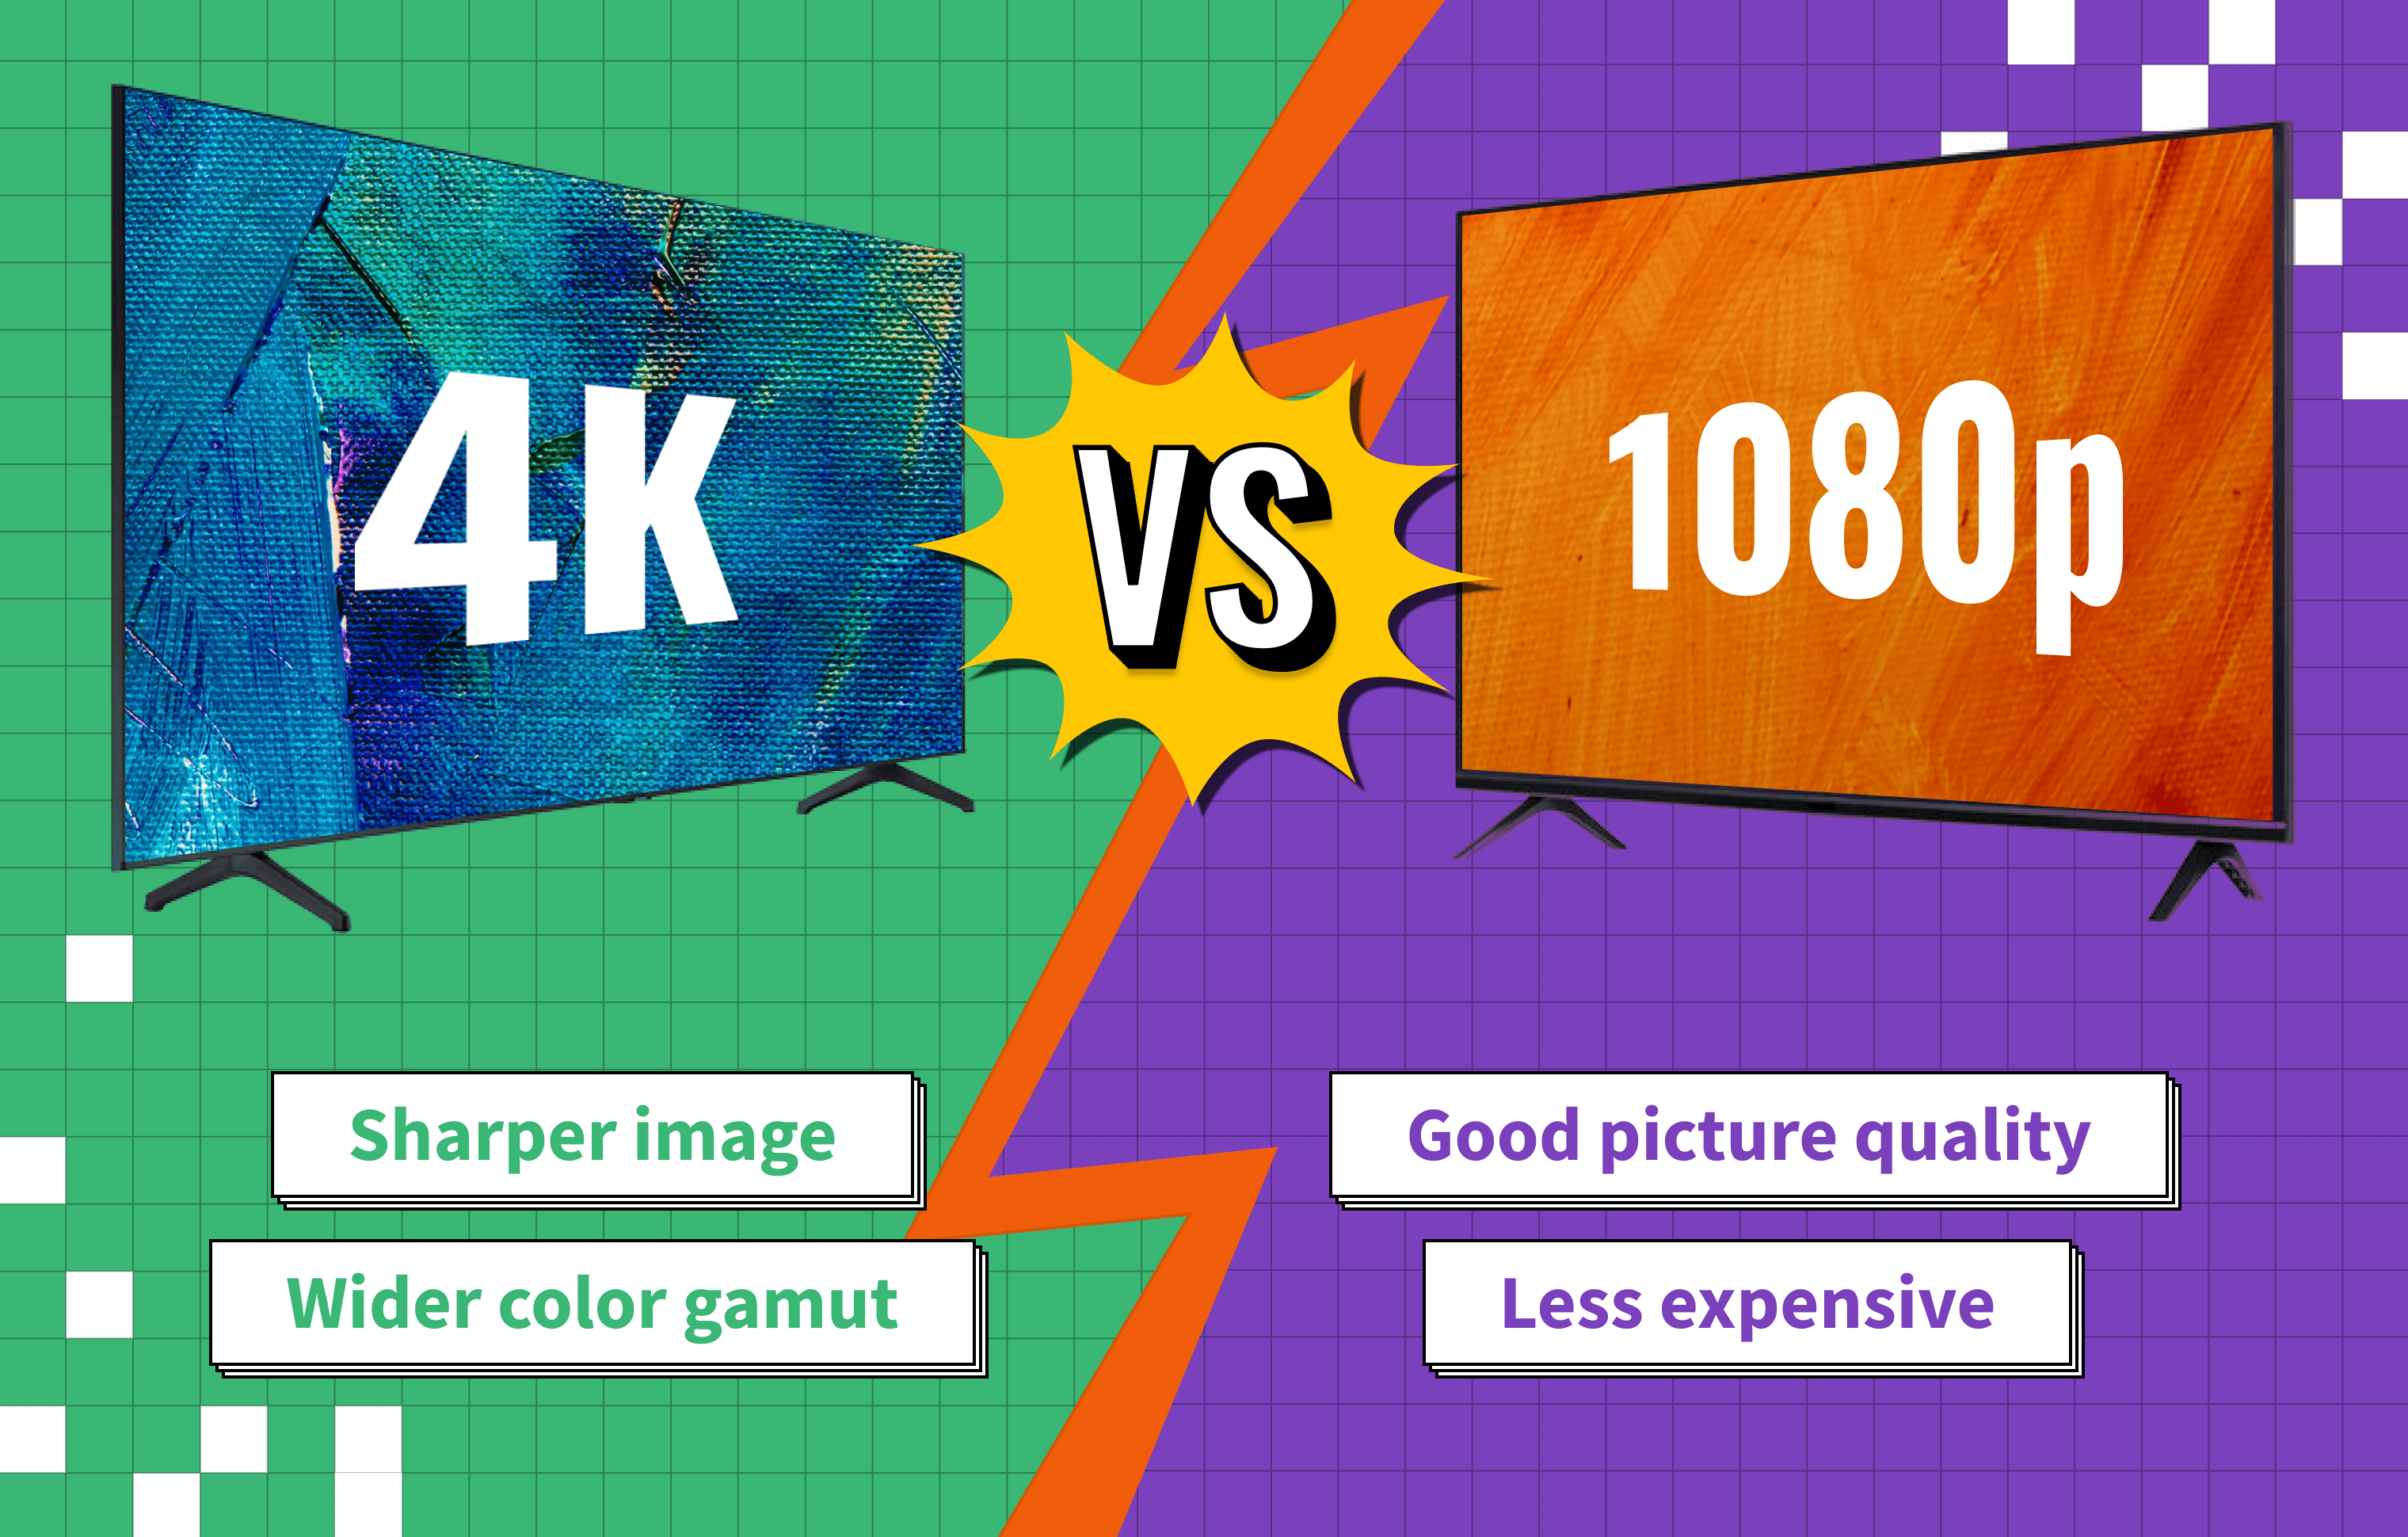 4k vs 1080p guide